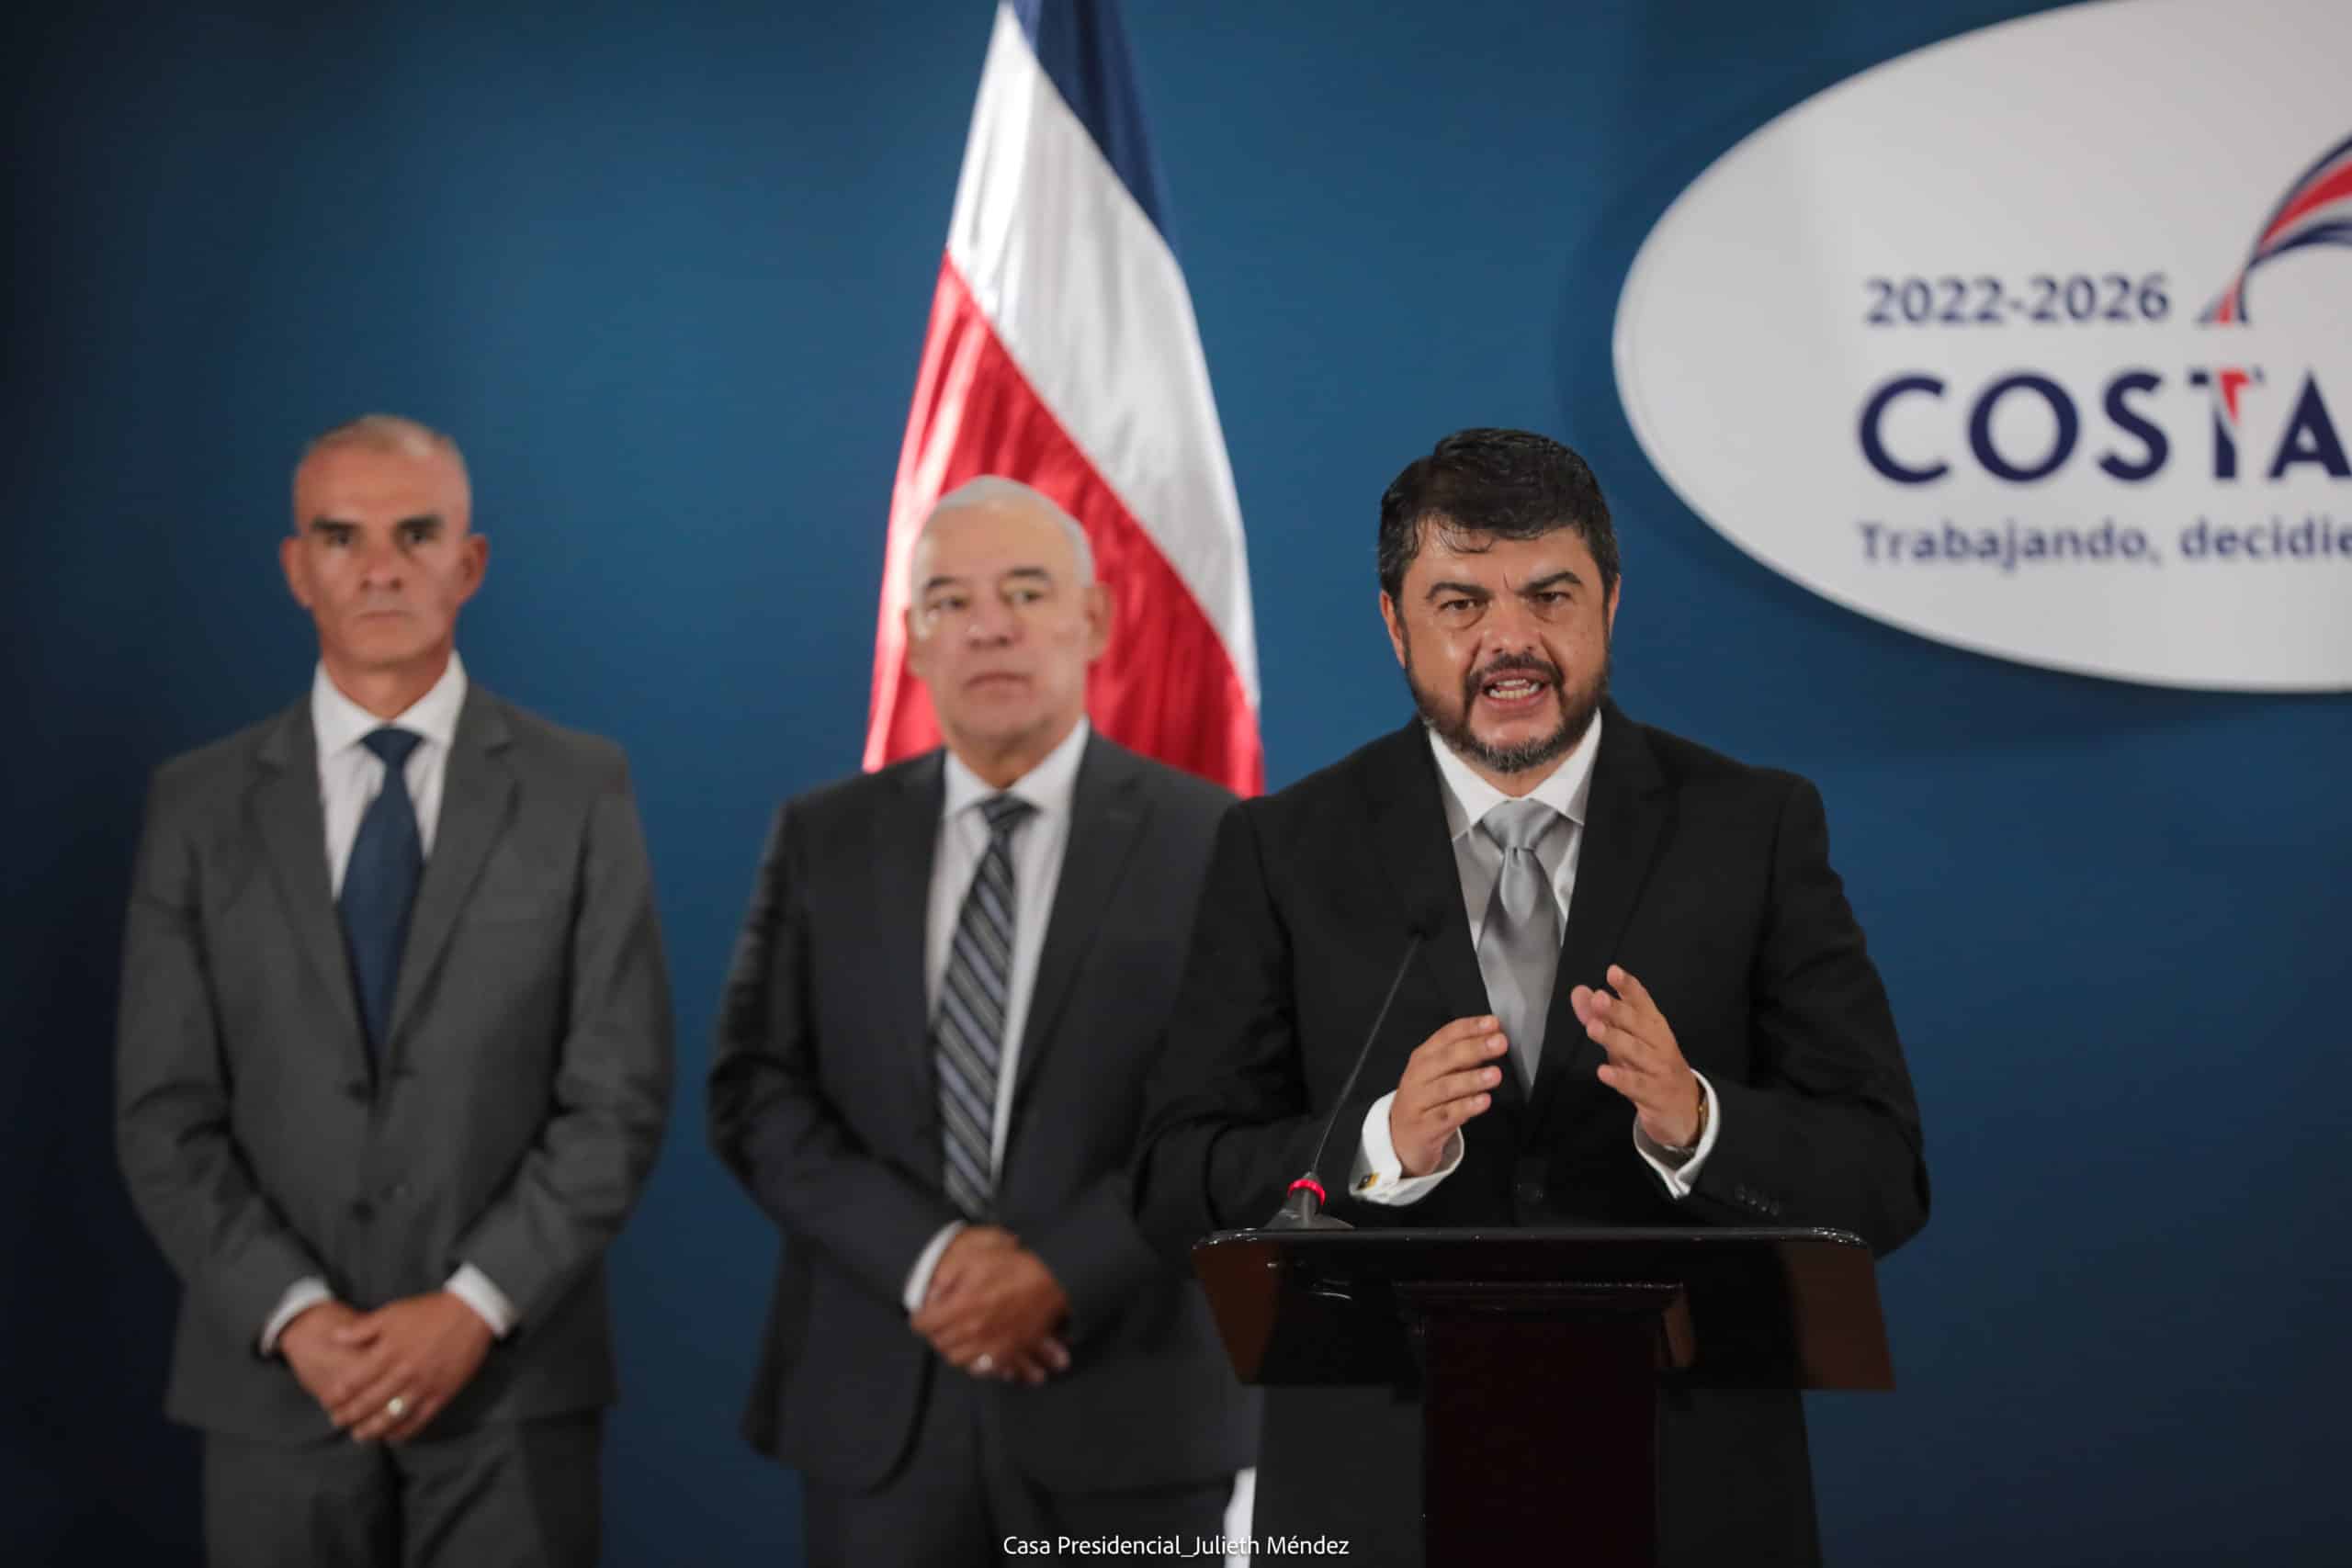 “No hay solución inmediata”, advierte nuevo ministro de Seguridad al anunciar lucha contra sicariato en Costa Rica